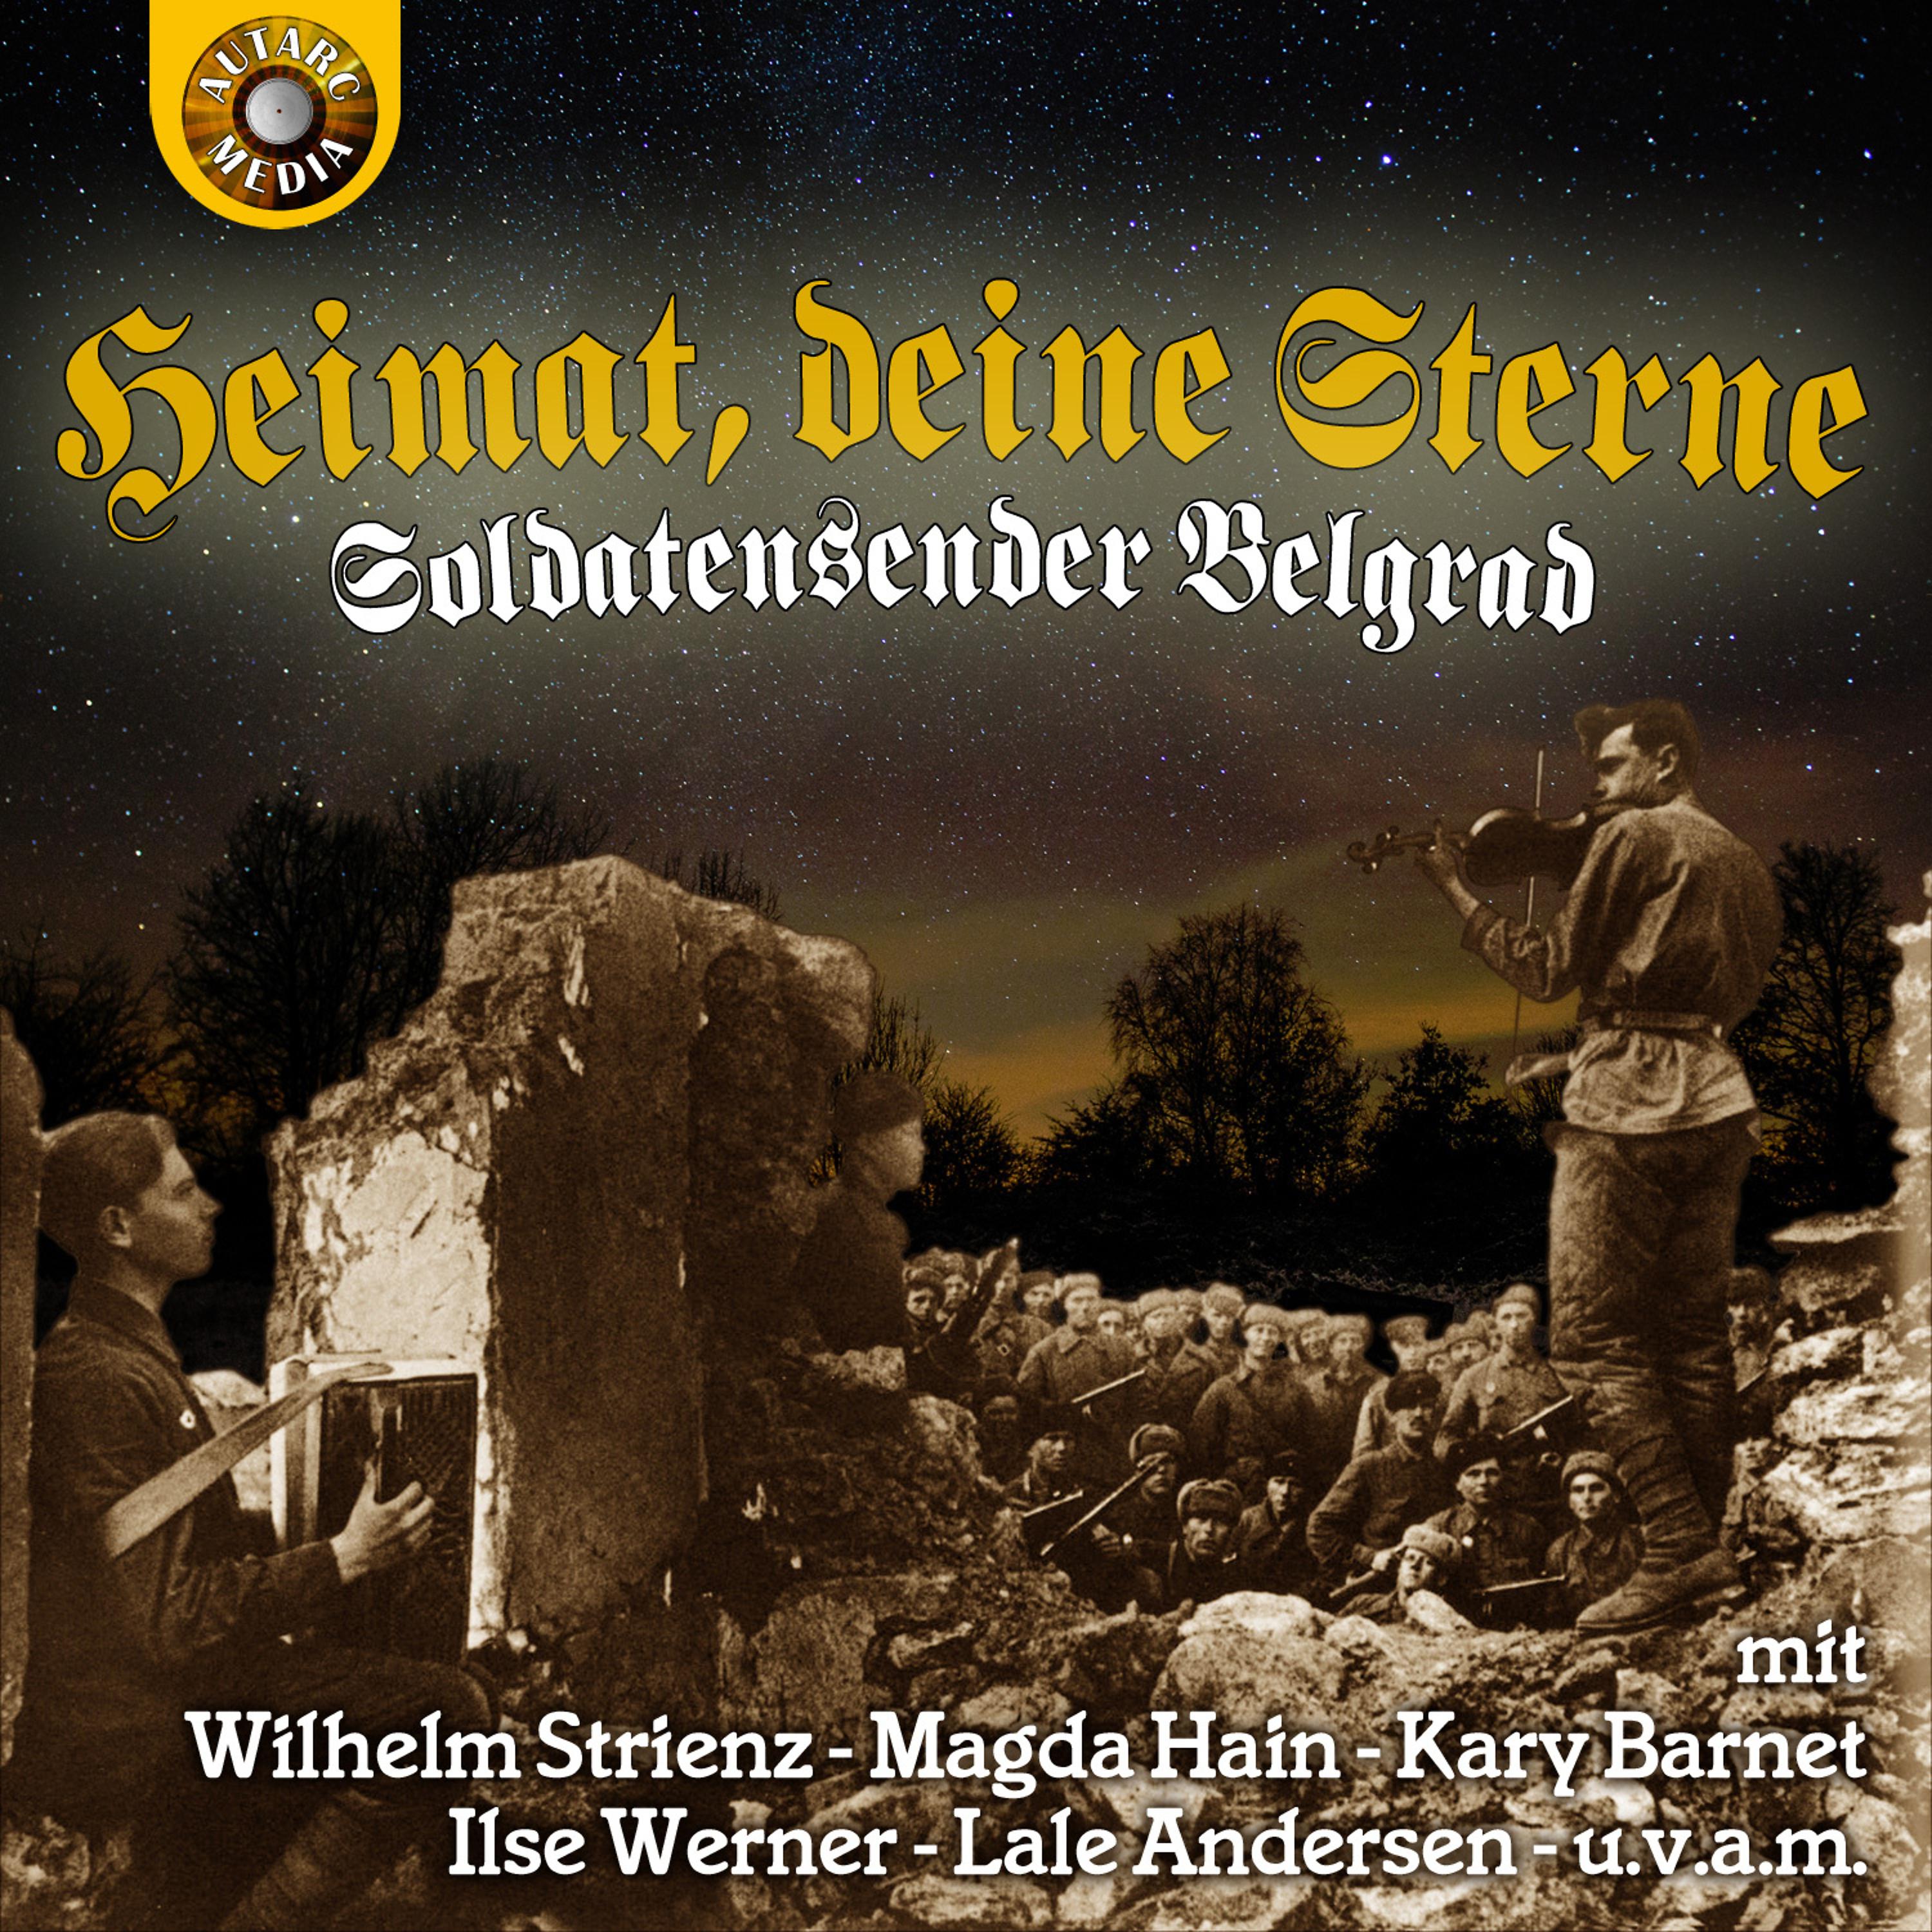 Постер альбома Heimat, deine Sterne-Soldatensender Belgrad